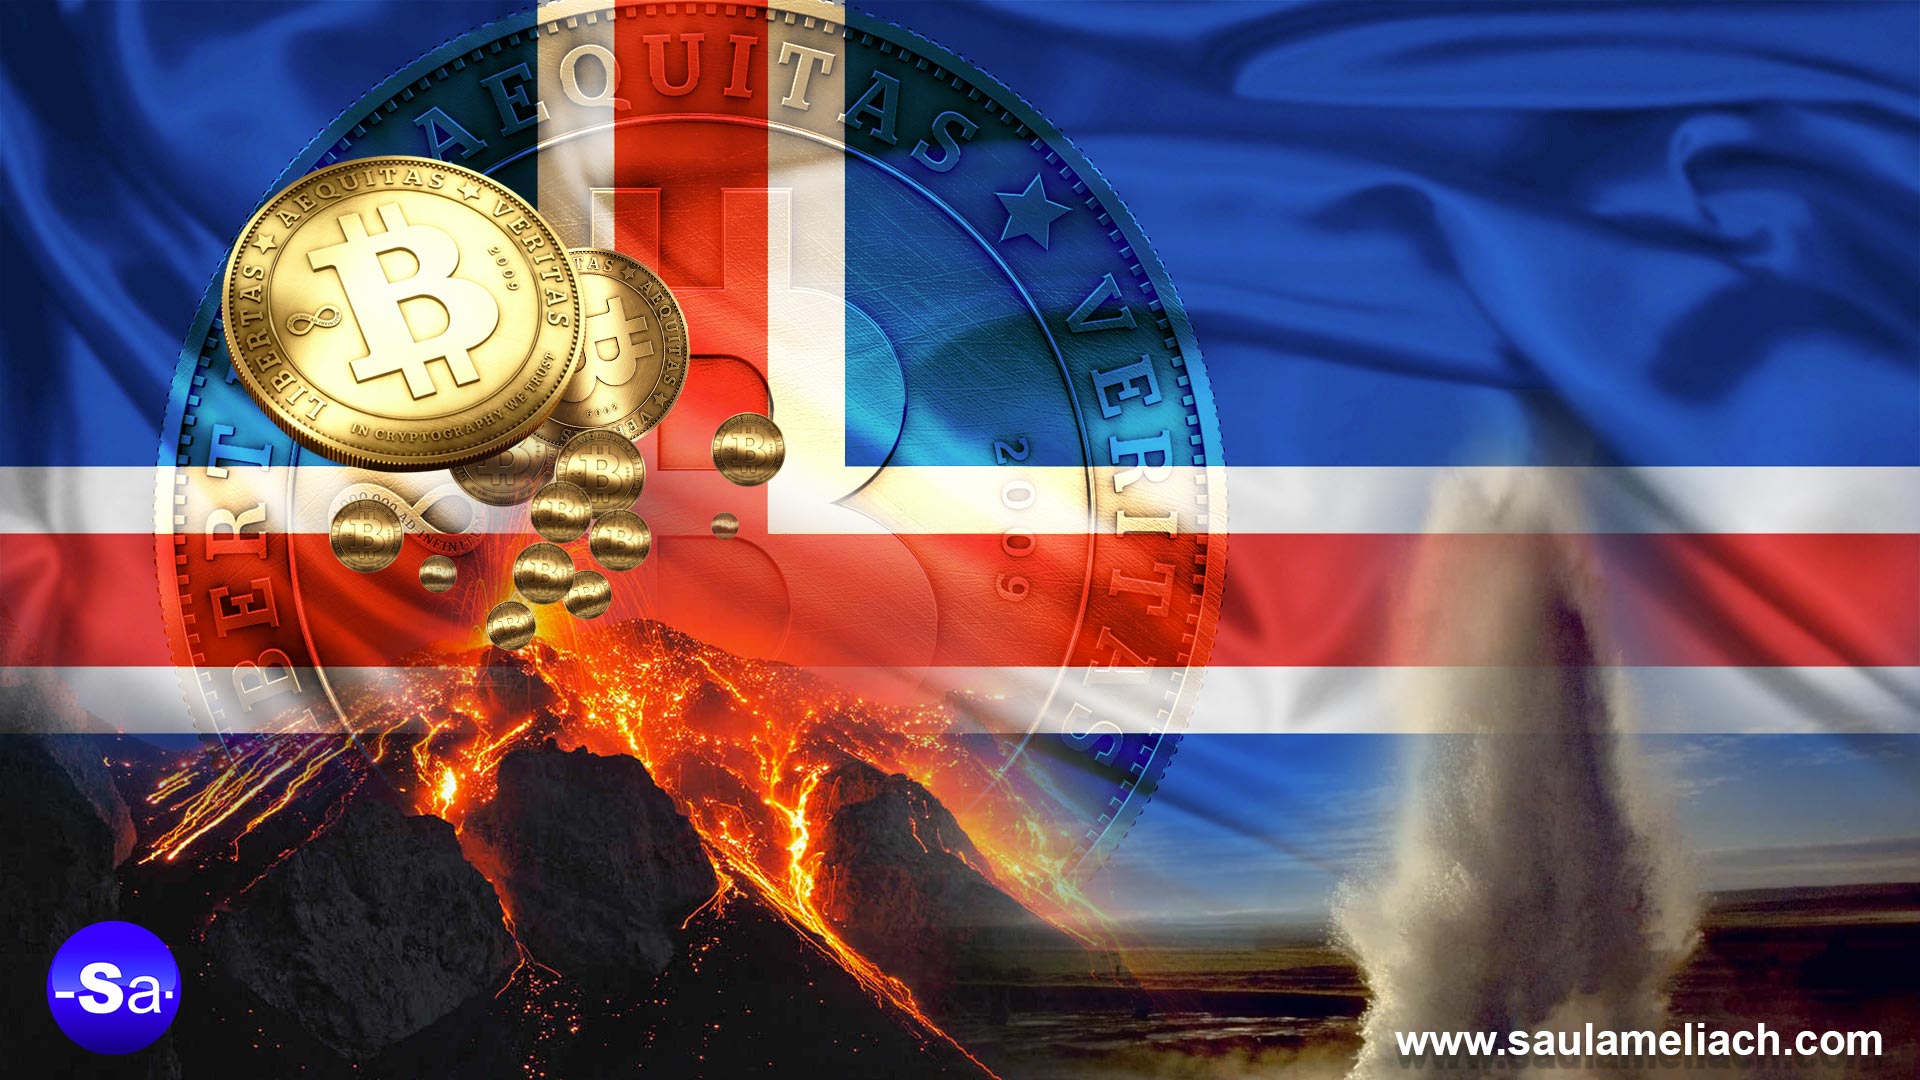 Islandia, tierra de volcanes, géiseres y ahora también de bitcoins